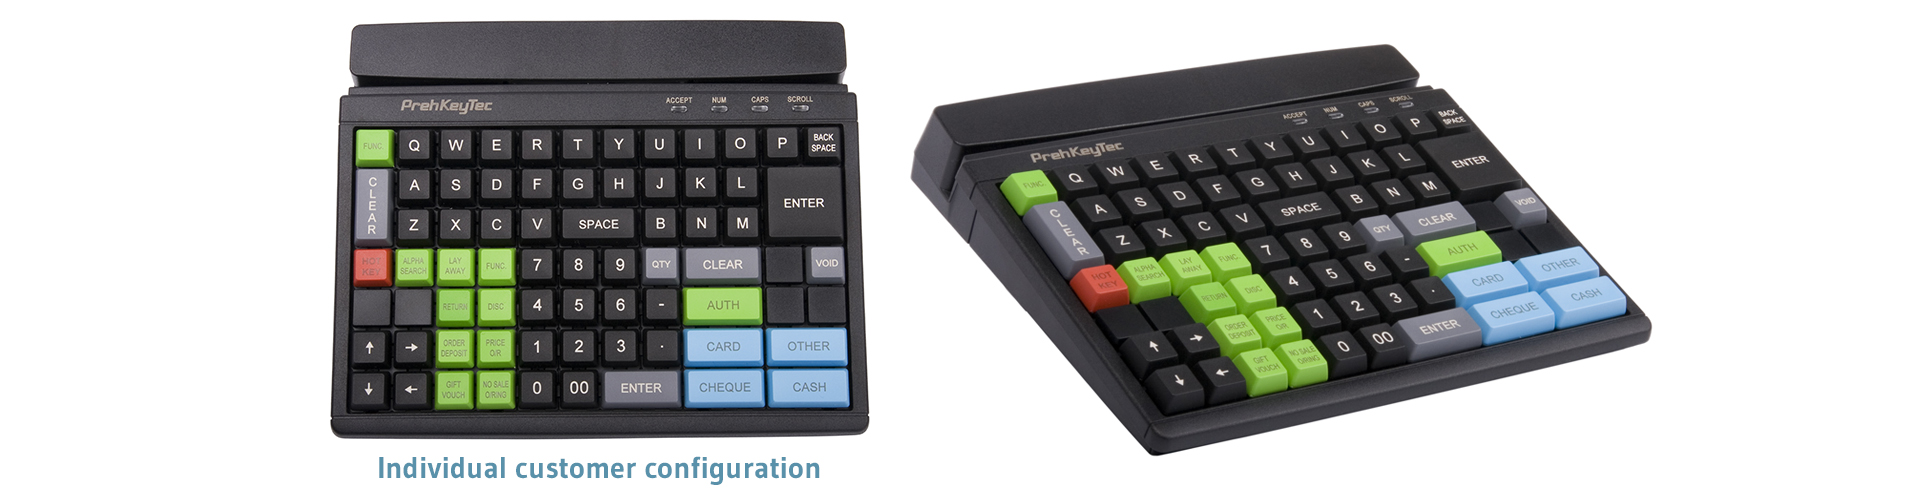 Customizable Programmable Cash Register Keyboard